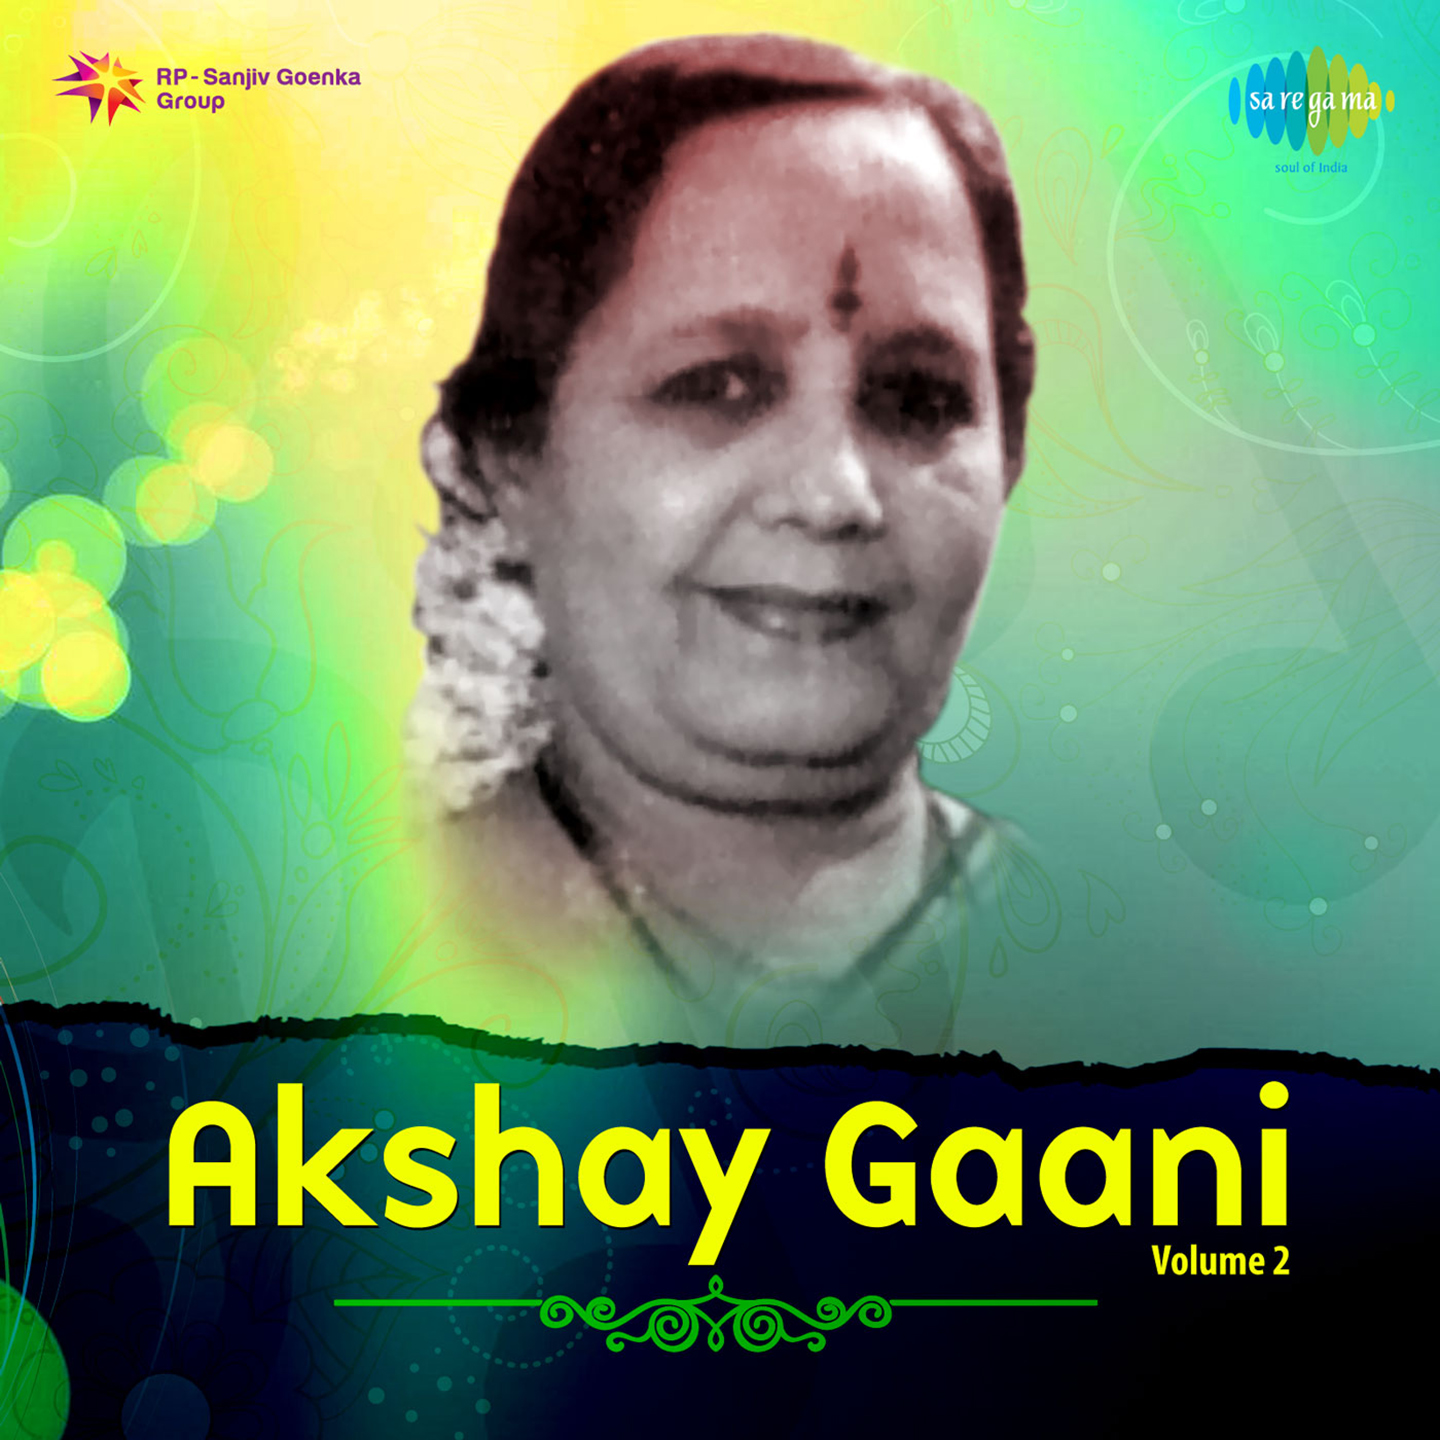 Akshay Gaani Volume 2